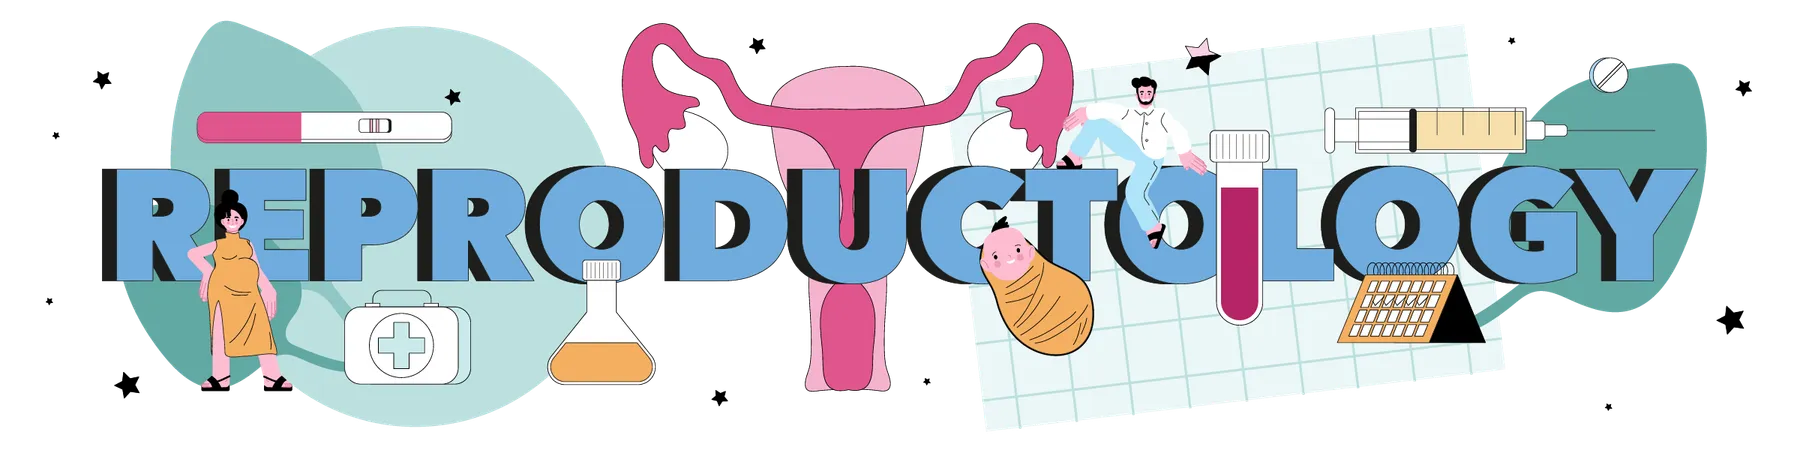 Pregnancy monitoring and medical diagnosis  Ilustración